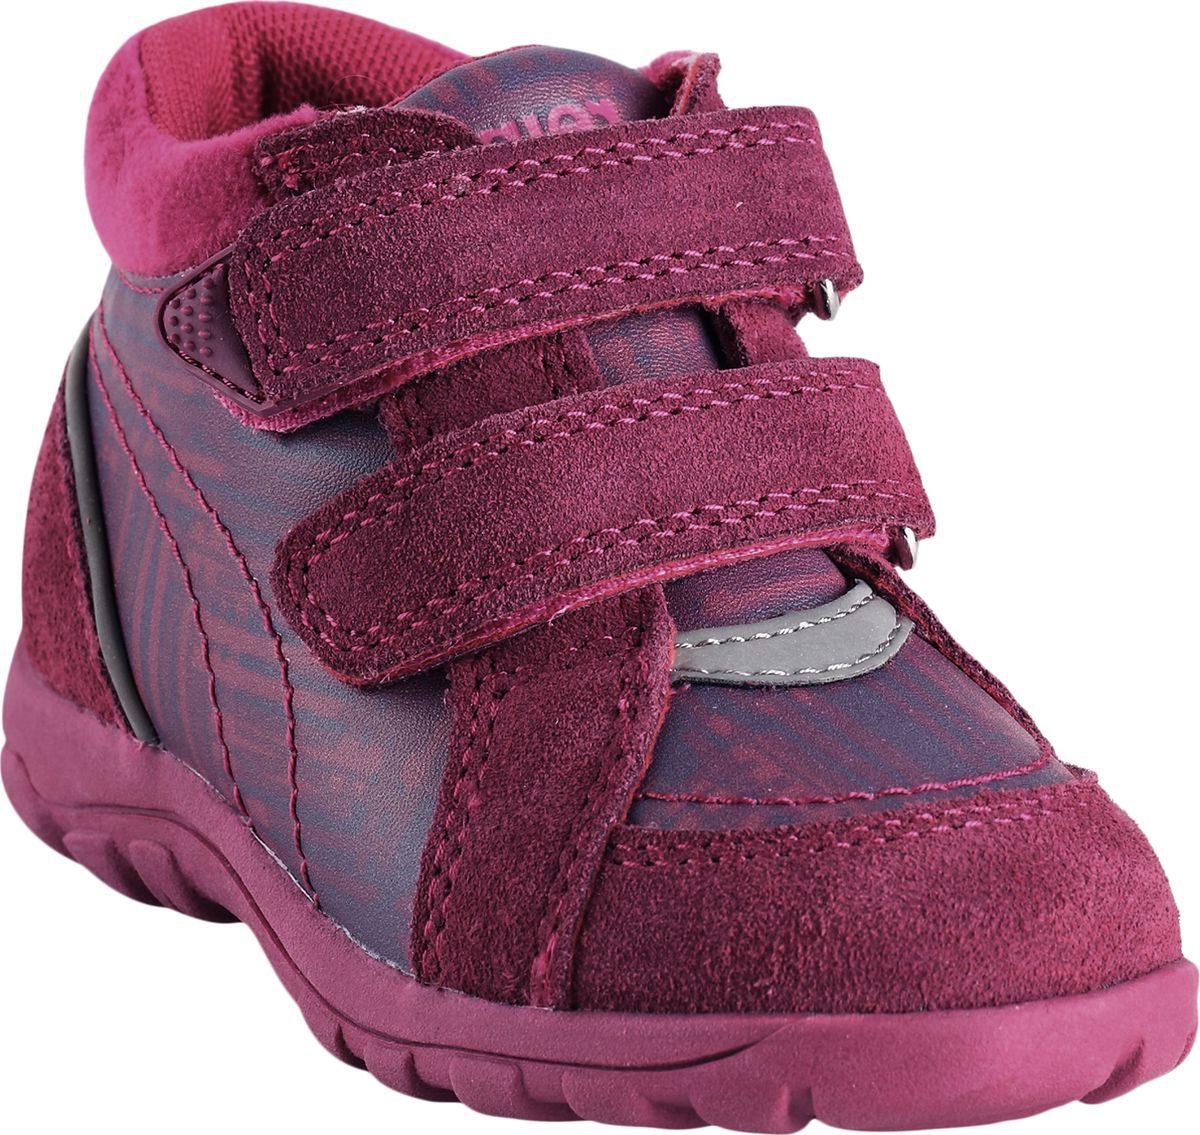 Ботинки детские Reima Lotte, цвет: розовый. 5693503691. Размер 27